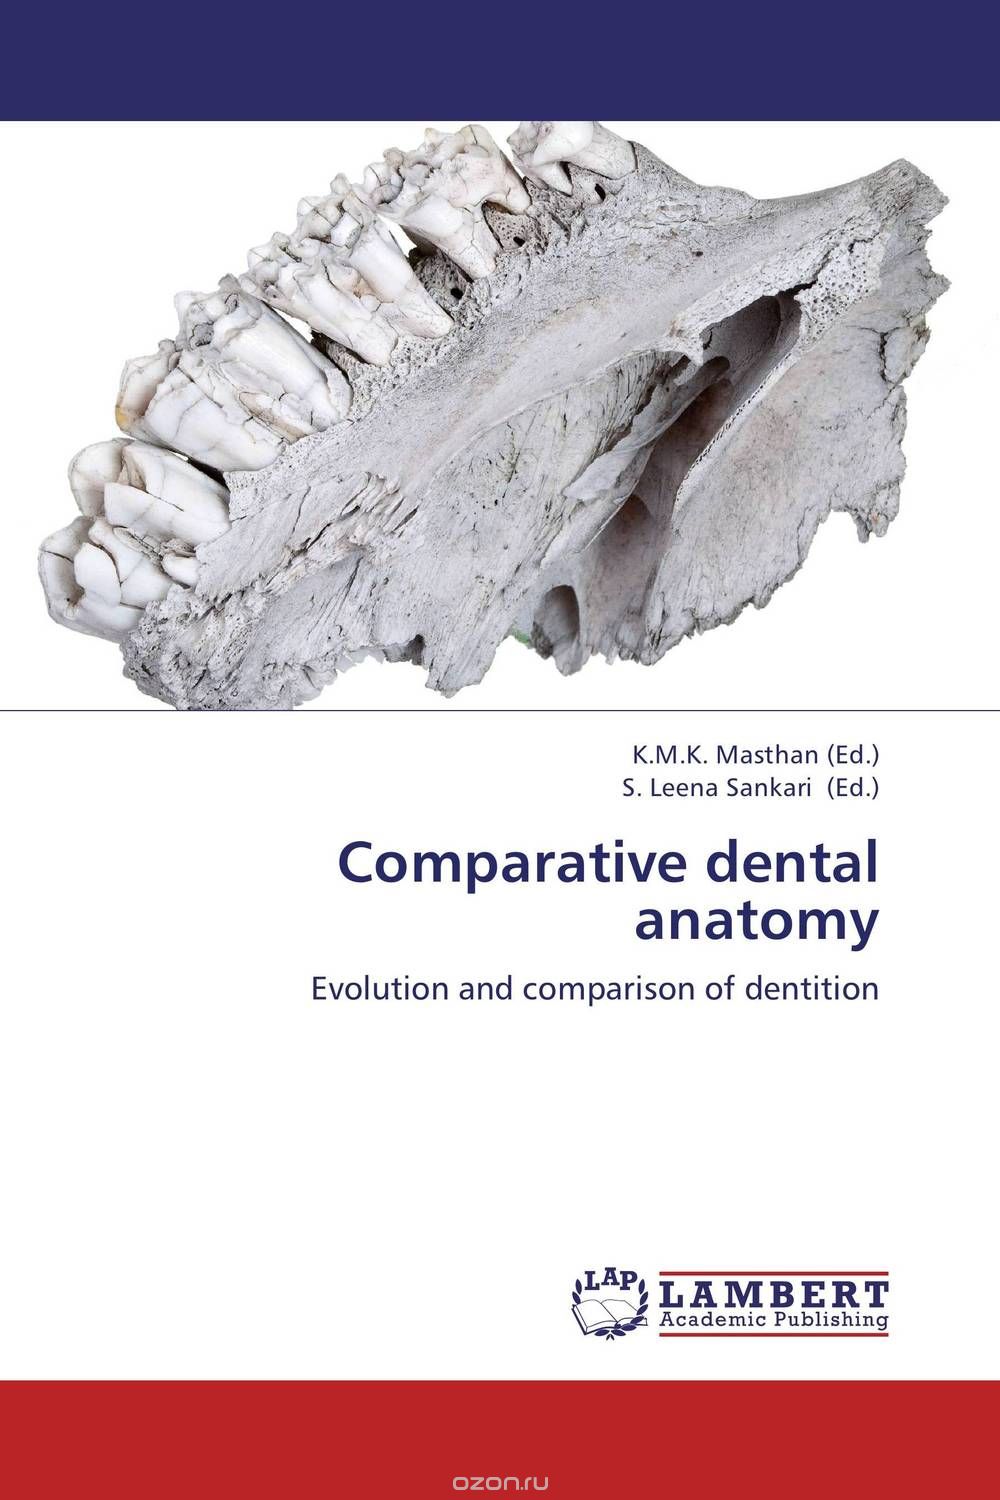 Скачать книгу "Comparative dental anatomy"